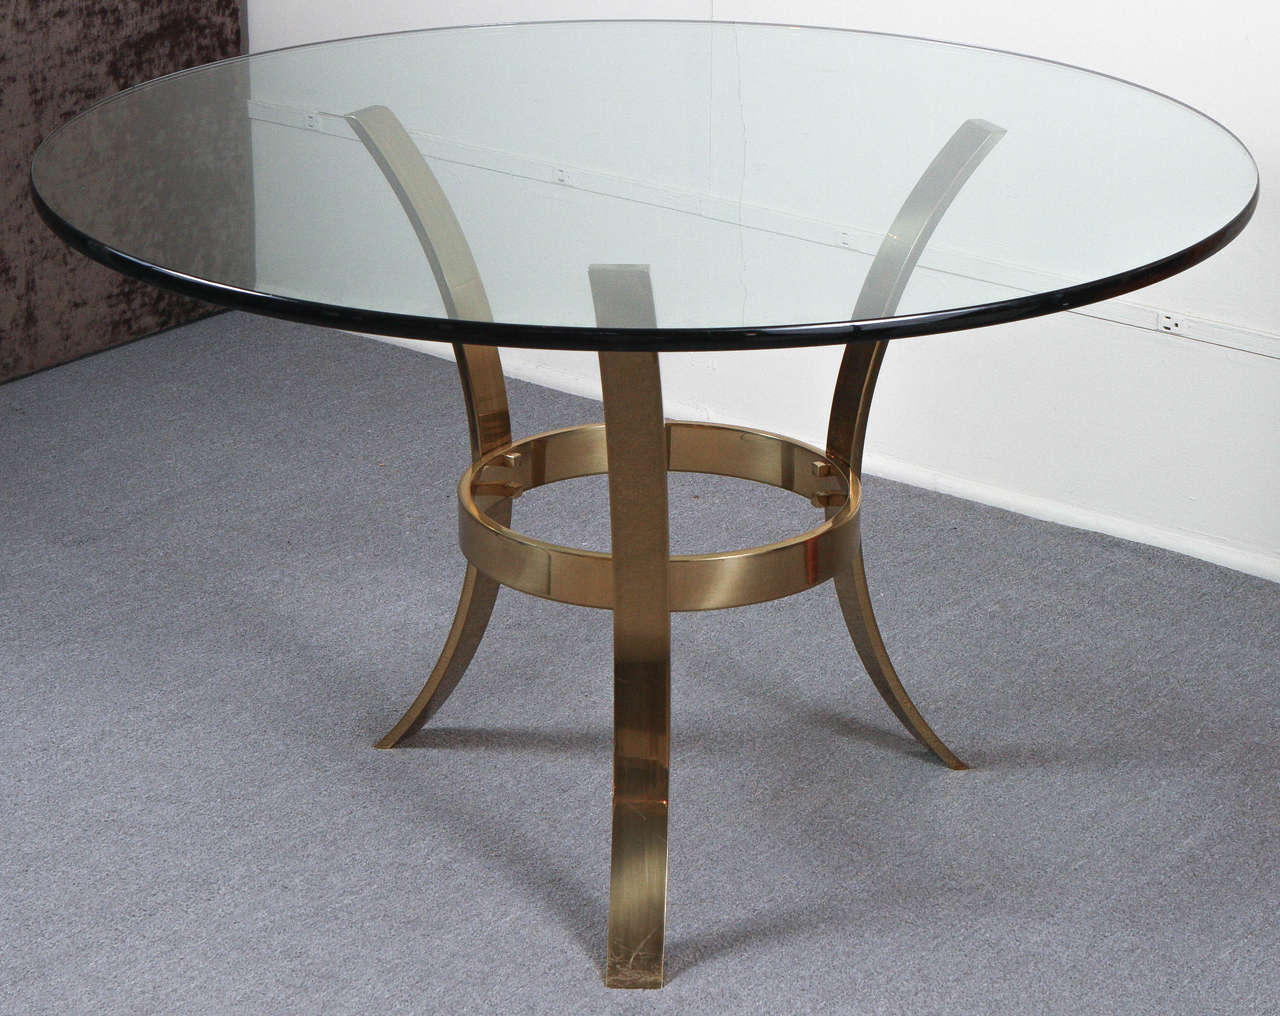 Grande table d'entrée avec une base tripode robuste en laiton poli et un plateau circulaire en verre.
La base est détaillée avec des boulons à tête cubique.